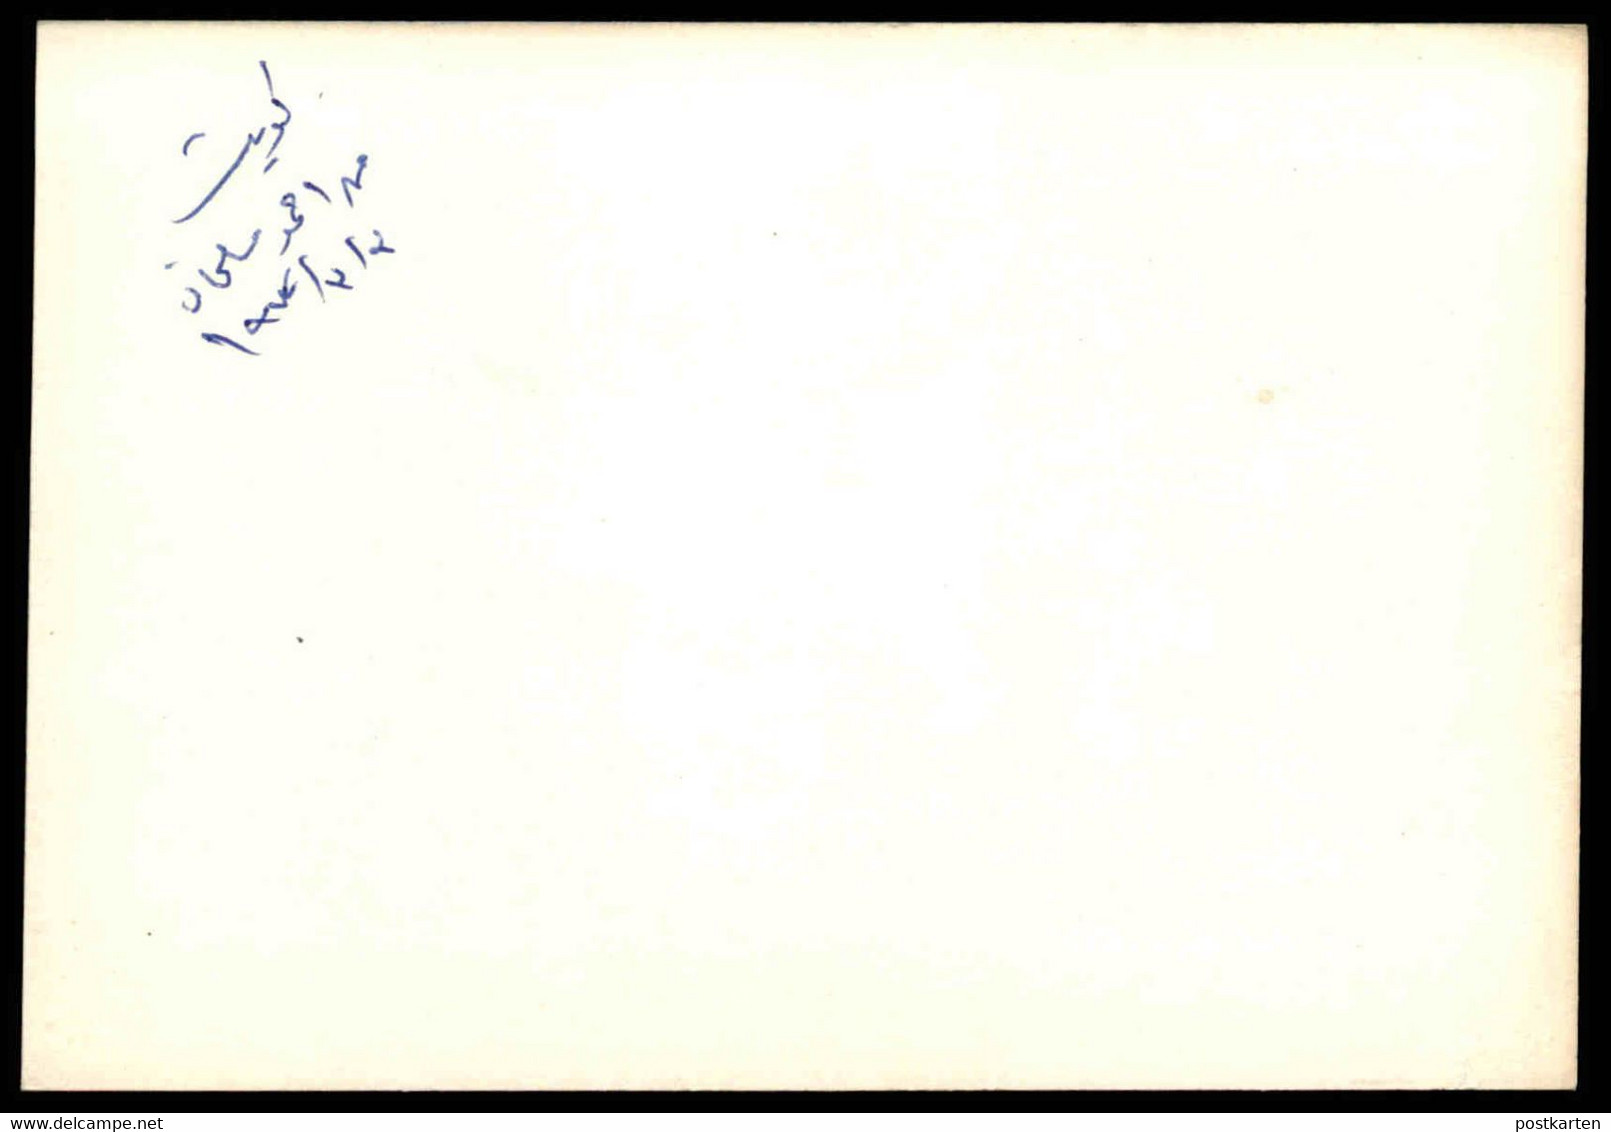 ÄLTERE KARTE KUWAIT WOHNVIERTEL 03.03.1972 AUTOS HÄUSER HAUS AHMED SALMAN Ansichtskarte Postcard Cpa AK - Koeweit